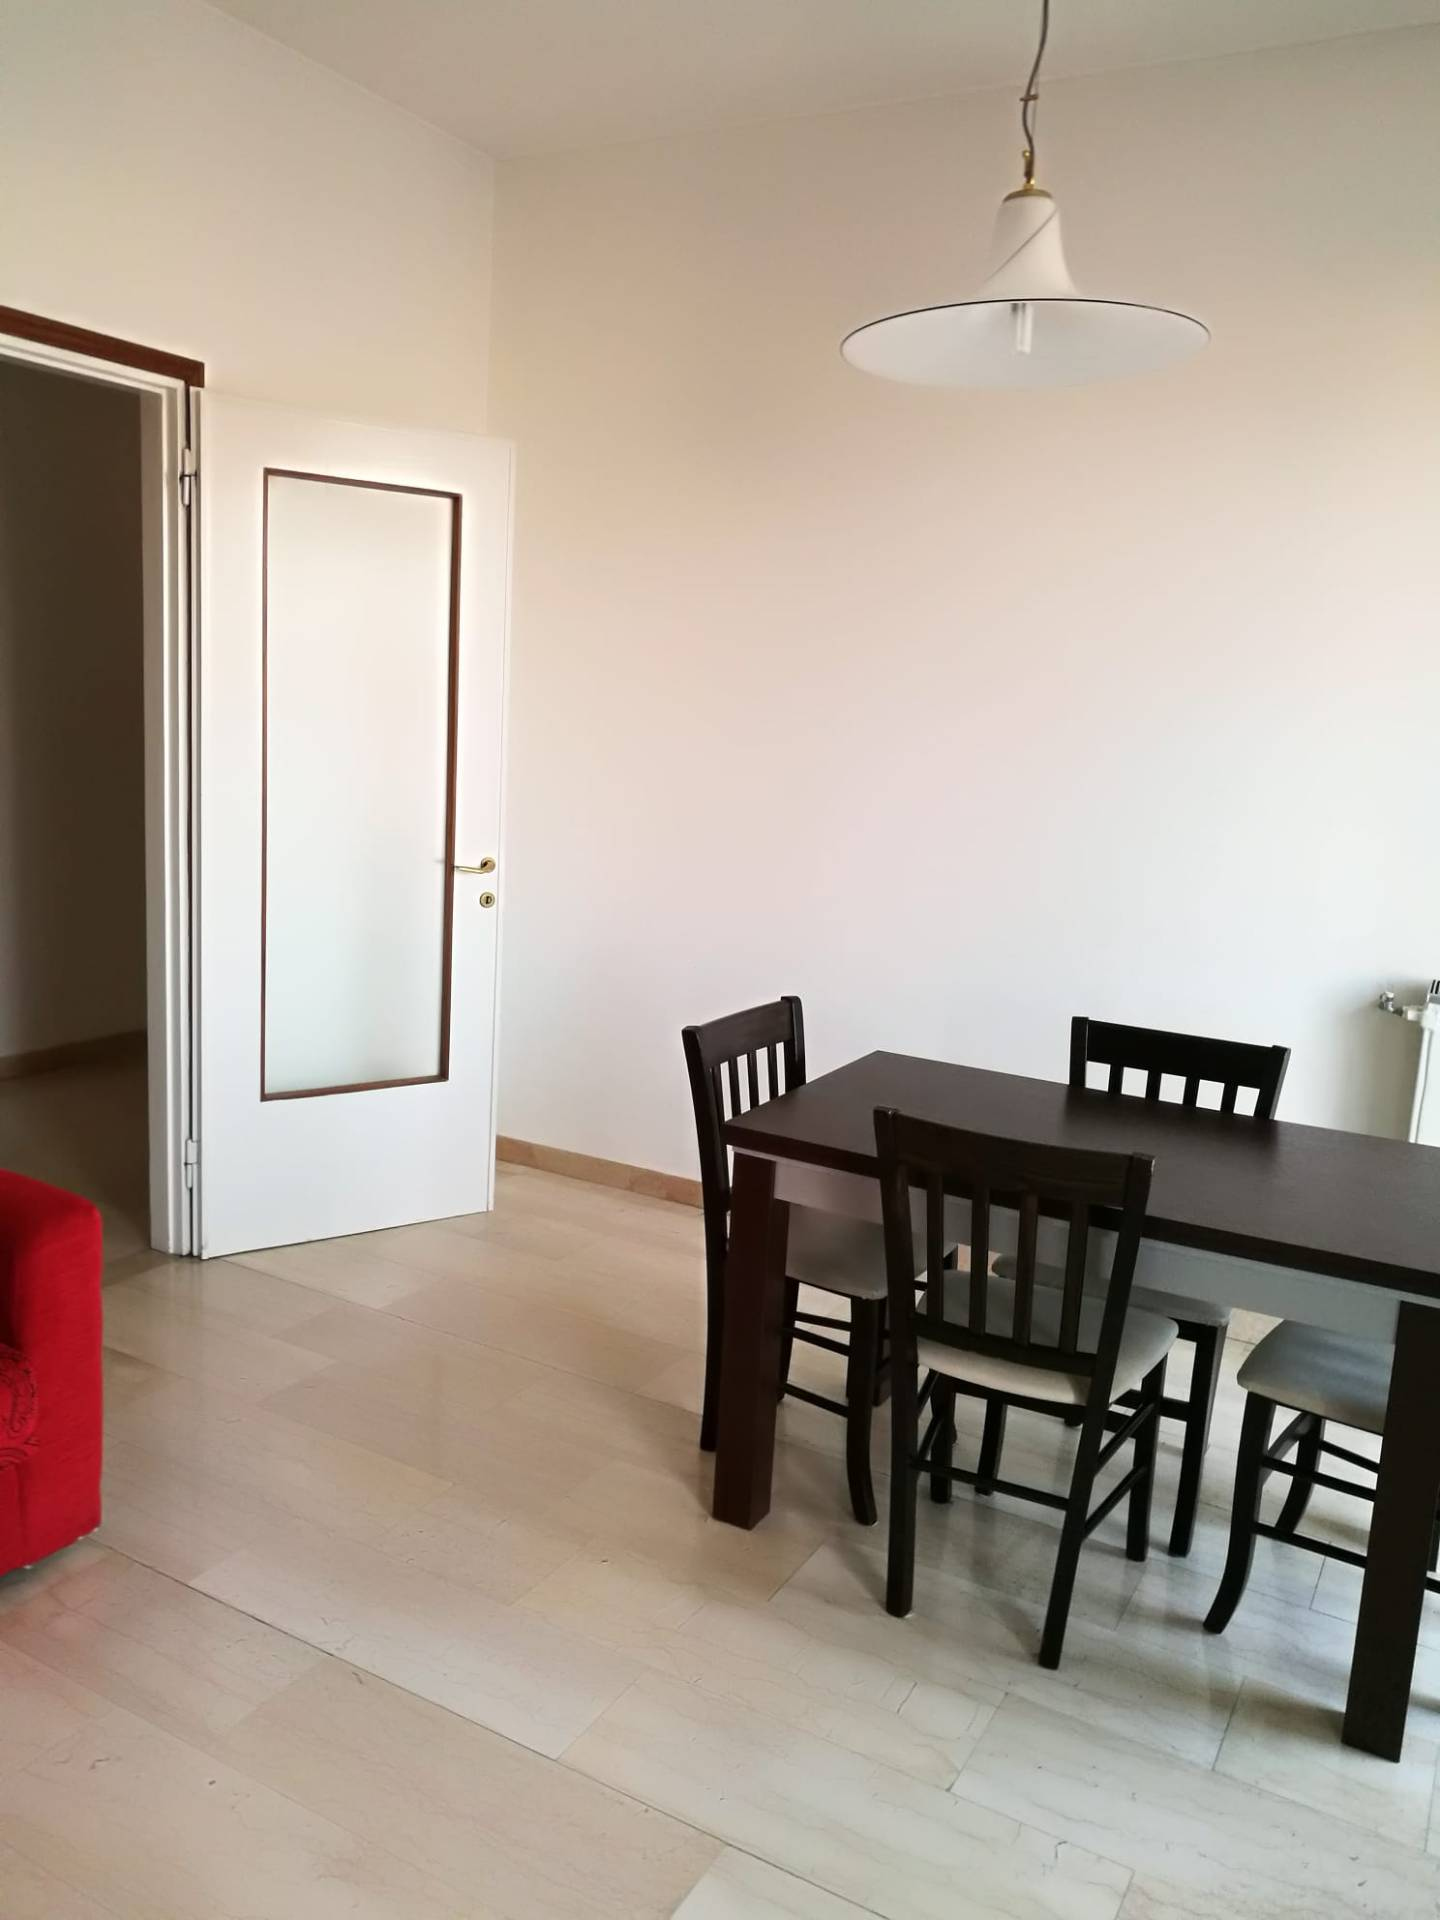 Appartamento in affitto a Saronno, 2 locali, prezzo € 600 | CambioCasa.it